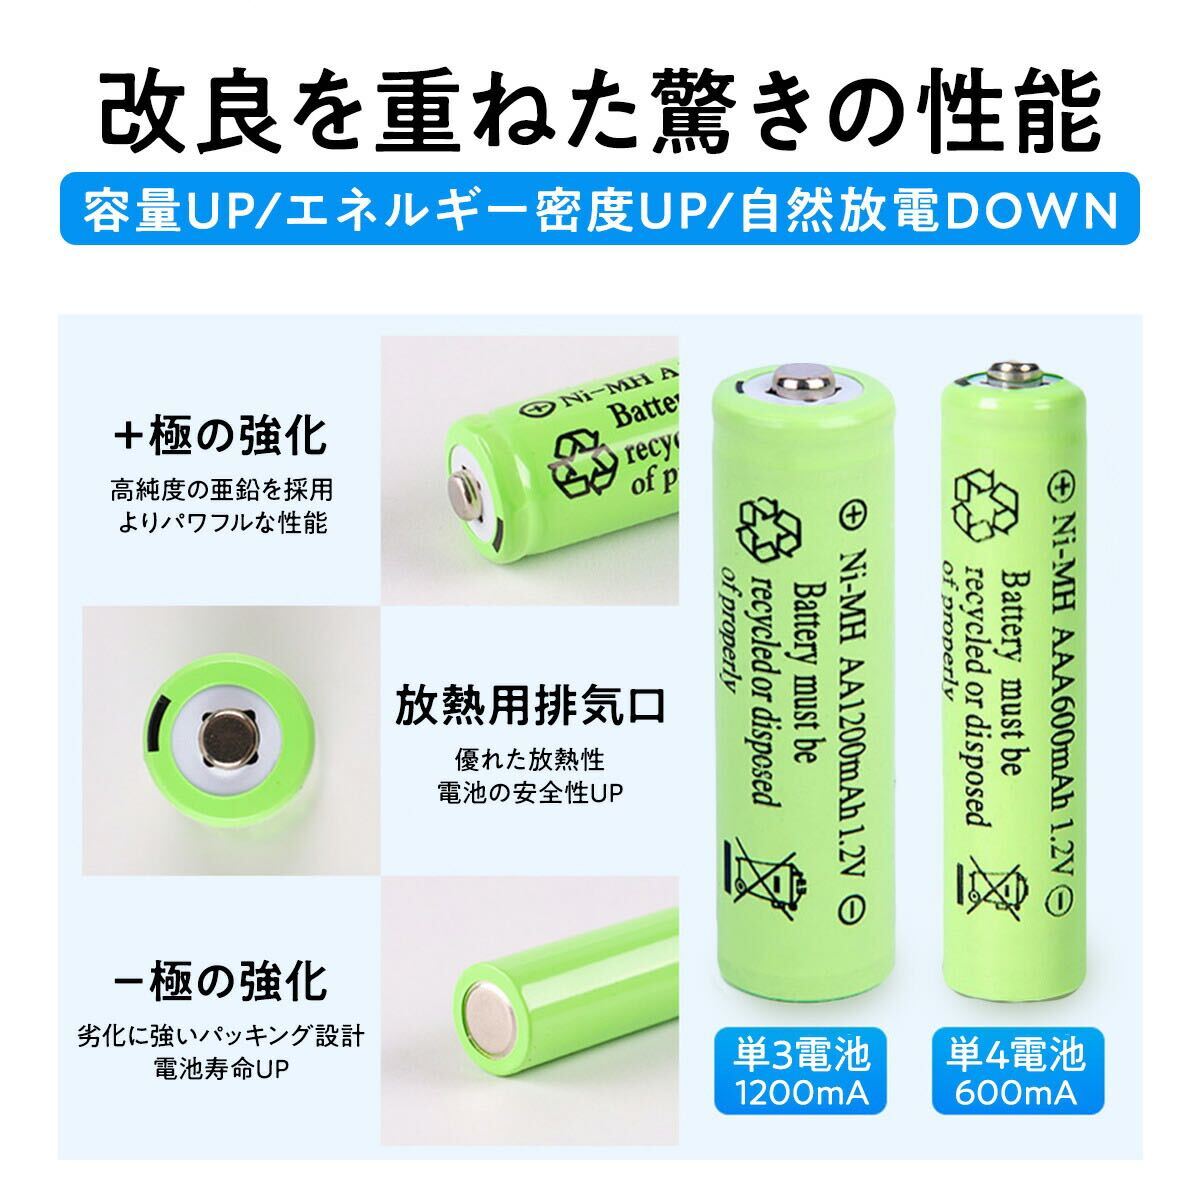 充電池 ニッケル水素電池 単3形 8本セット 1200mAh 保管ケース付き容量偽装無 